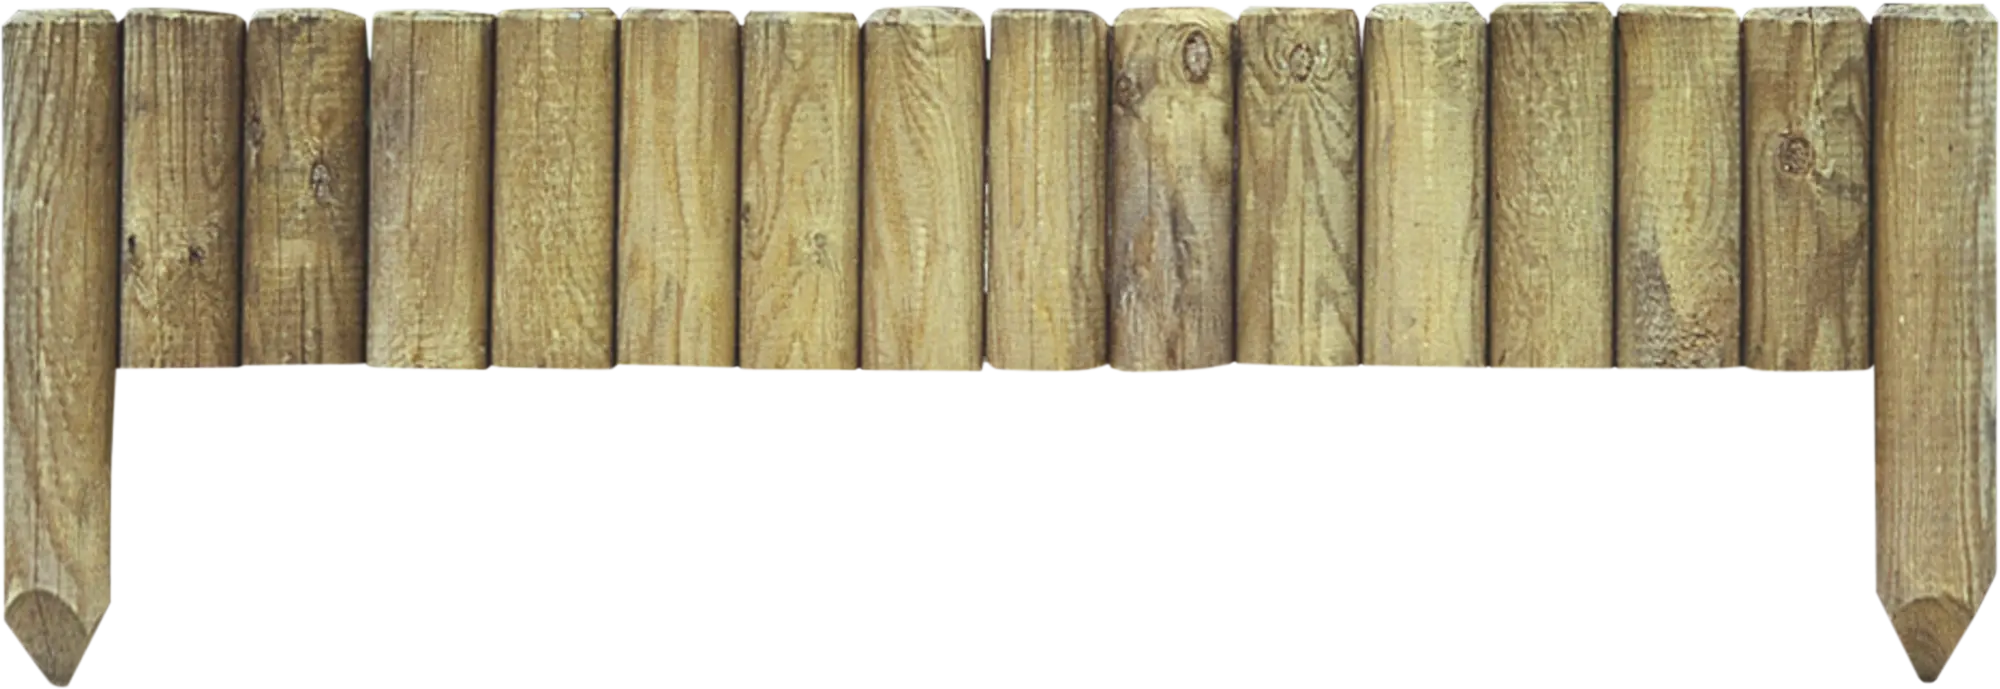 Bordura recta de madera border 20/40x112 cm